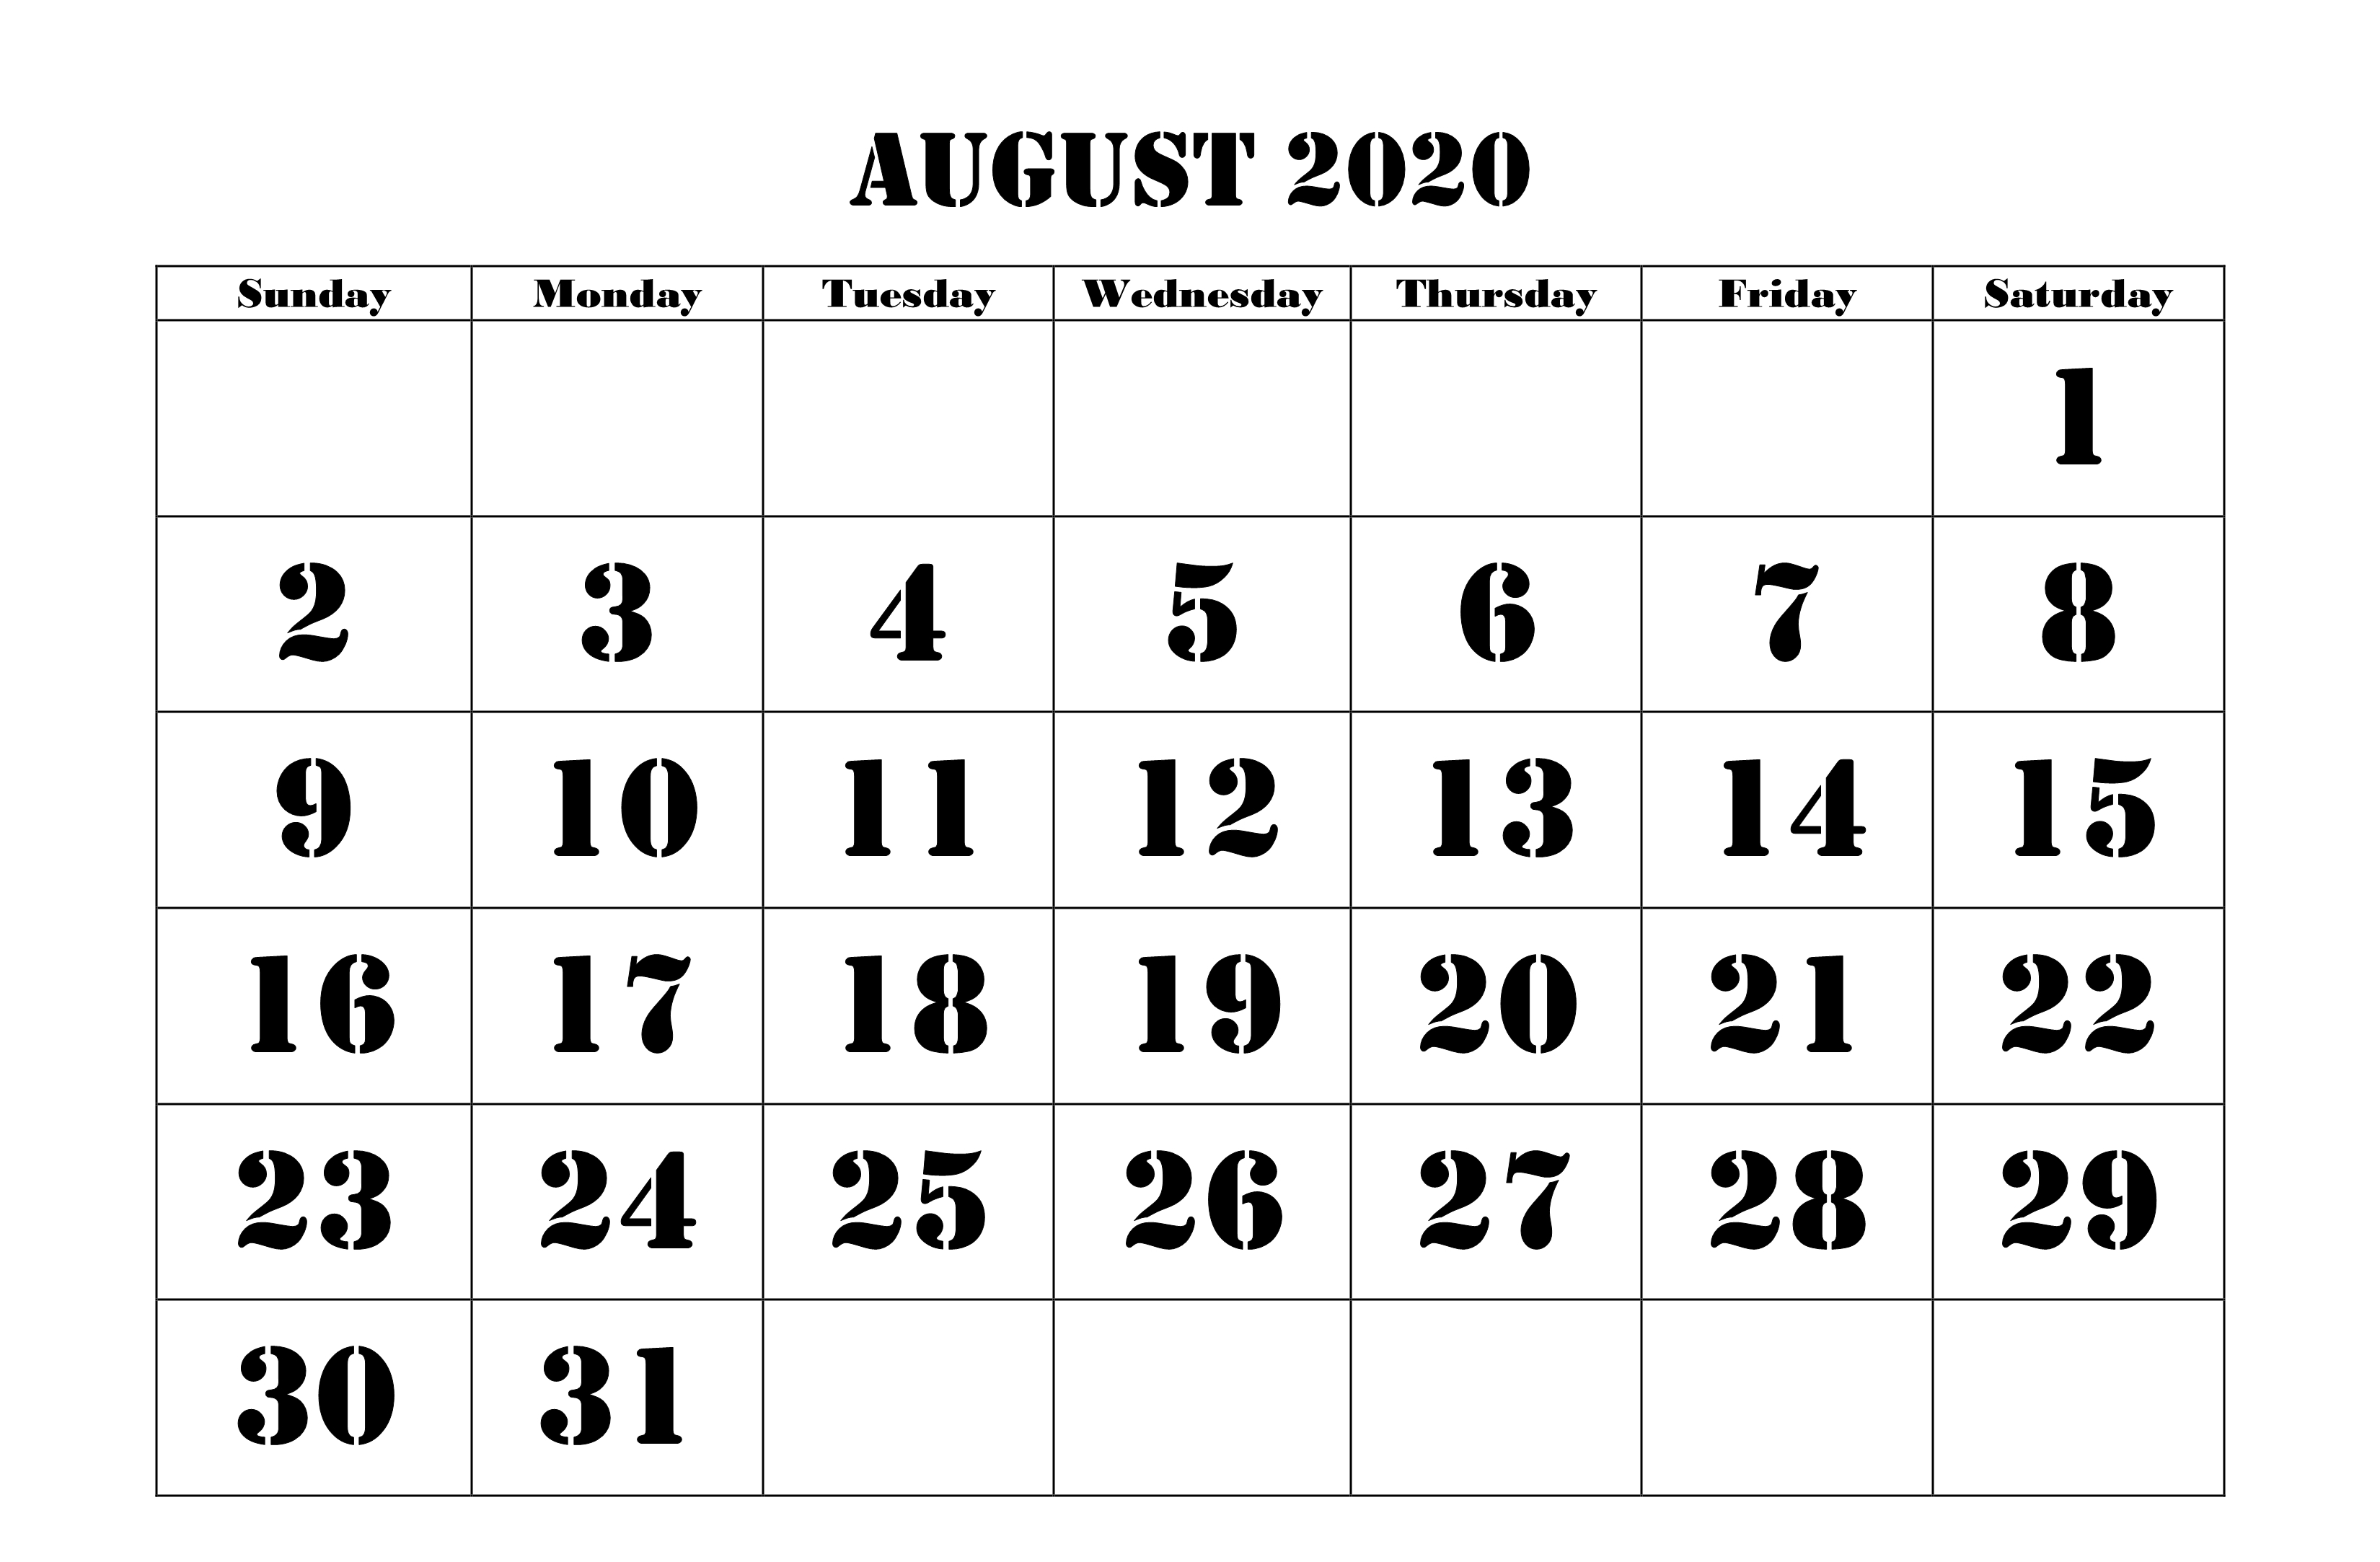 August 2020 Calendar Template